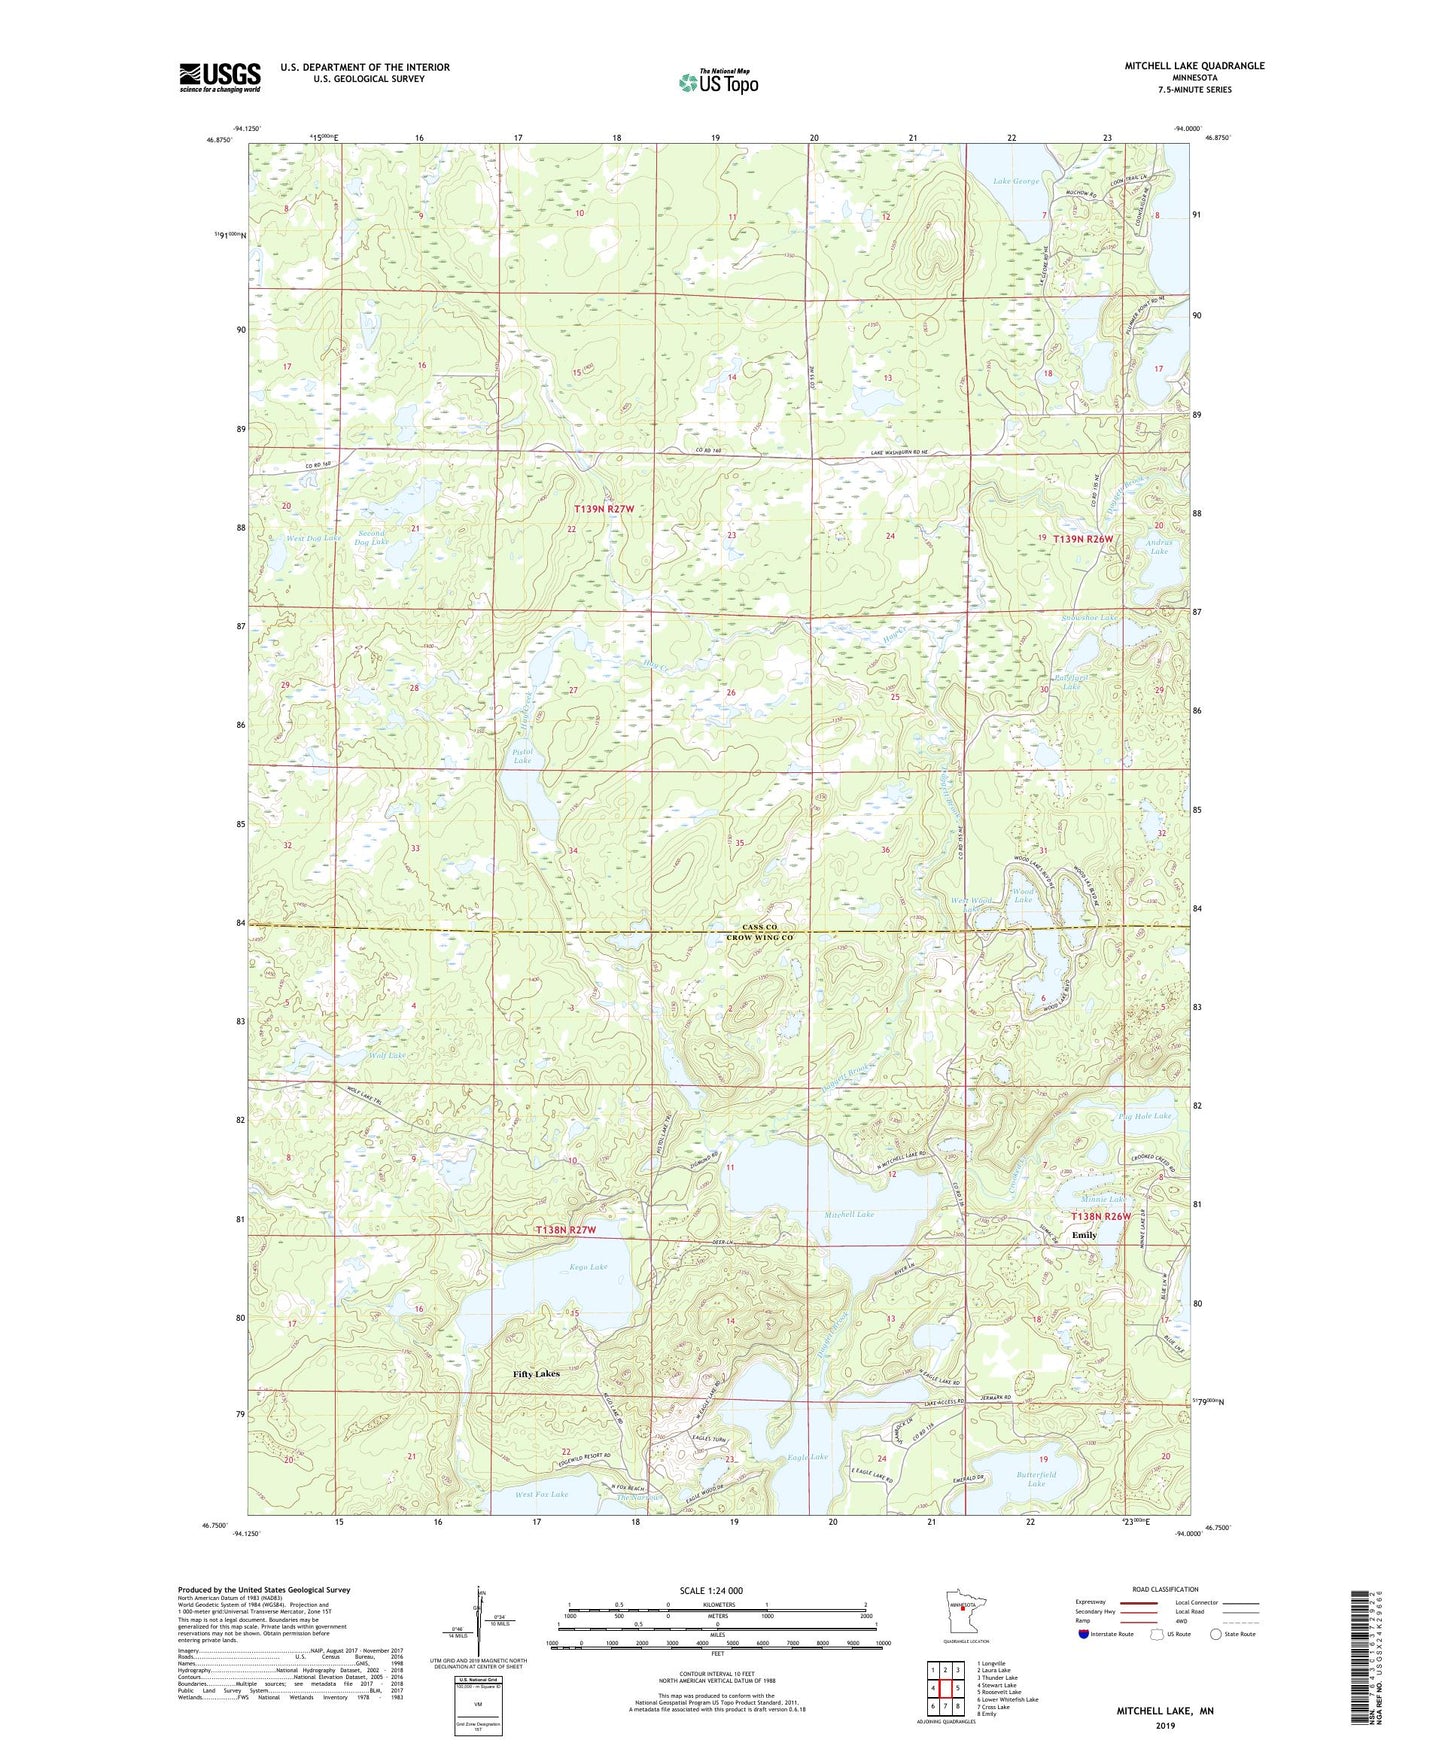 Mitchell Lake Minnesota US Topo Map Image